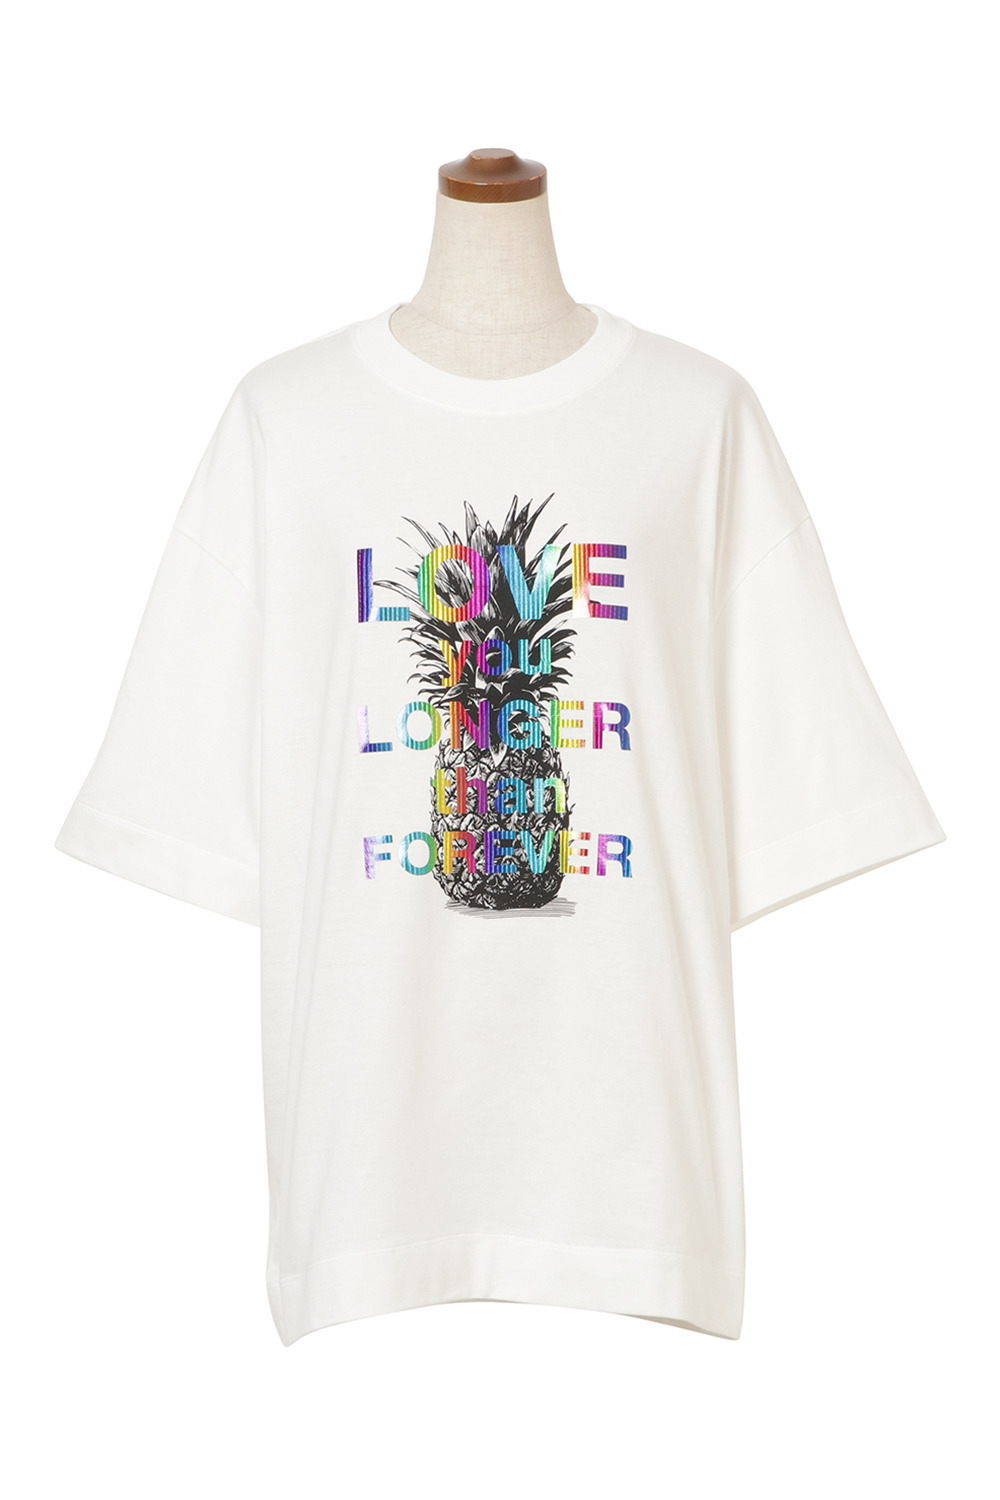 Pineapple Print Men's Tシャツ 詳細画像 ホワイト